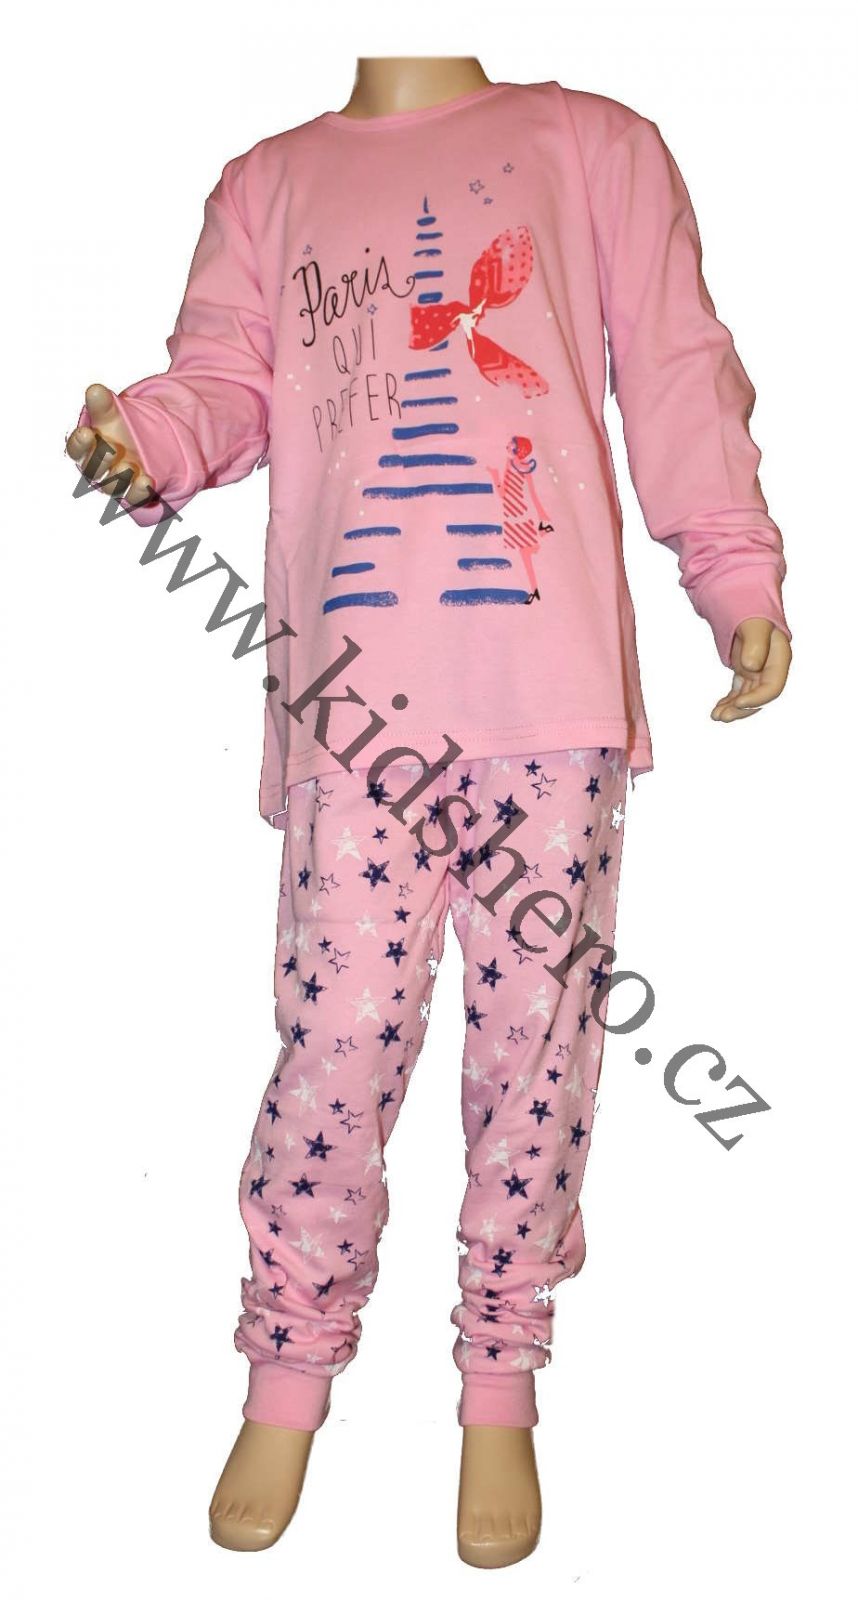 Dívčí pyžamo dětské bavlněné pyžamo dlouhé pyžamo